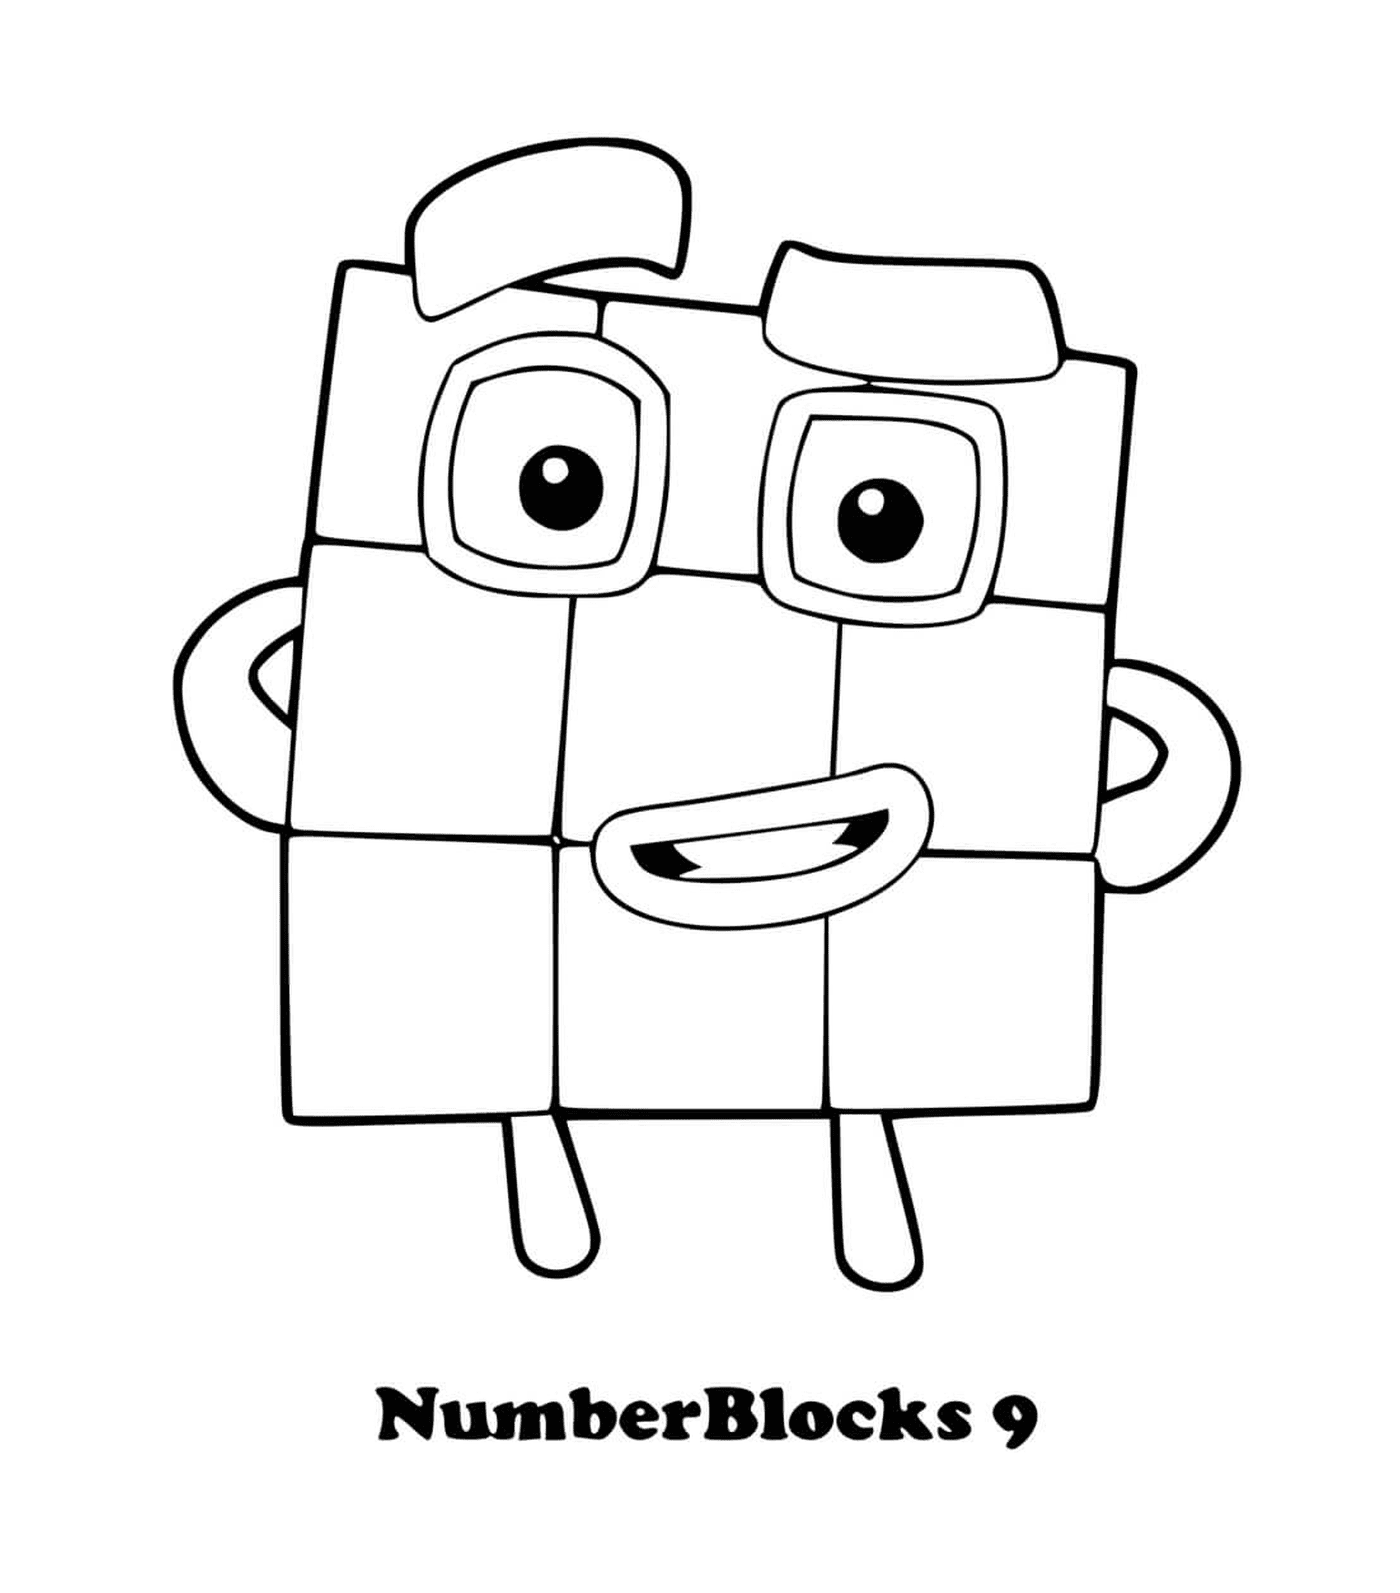  संख्या क्रमांक 9, आँख के साथ वर्ग 